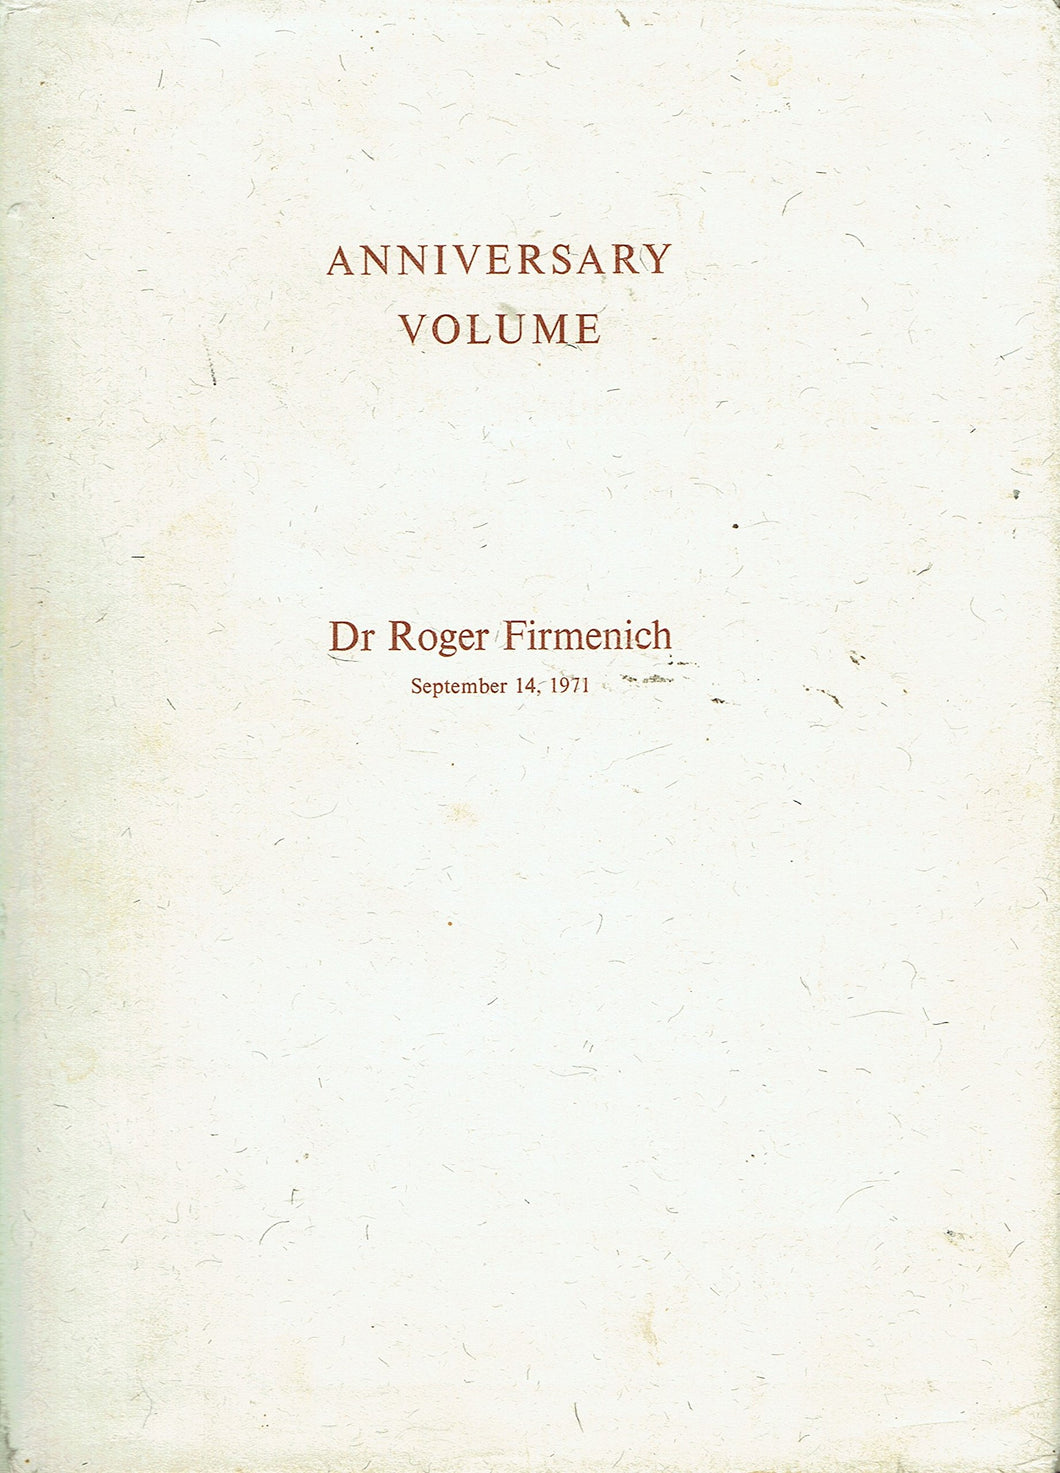 Anniversary Volume: Dr Roger Firmenich, September 14, 1971